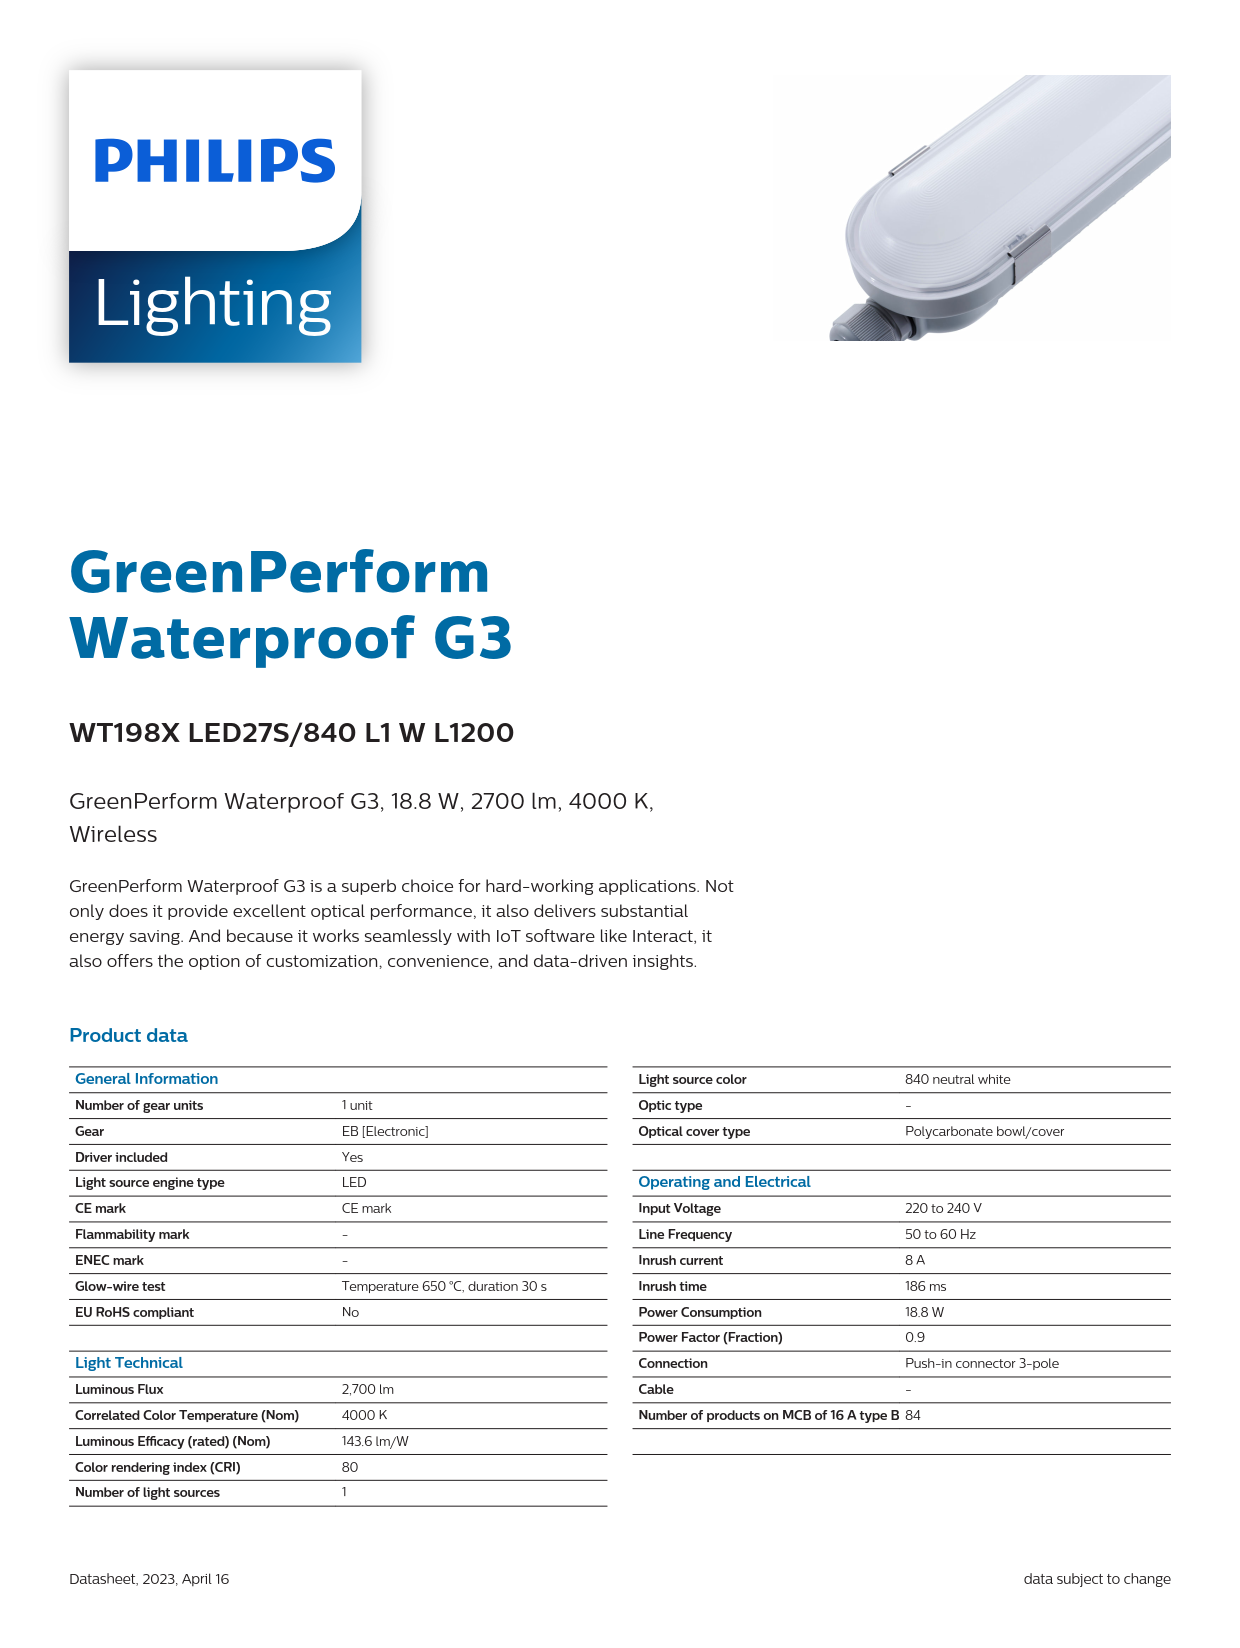 PHILIPS Waterproof Fixture light WT198X LED27S/840 L1 W L1200 911401551602